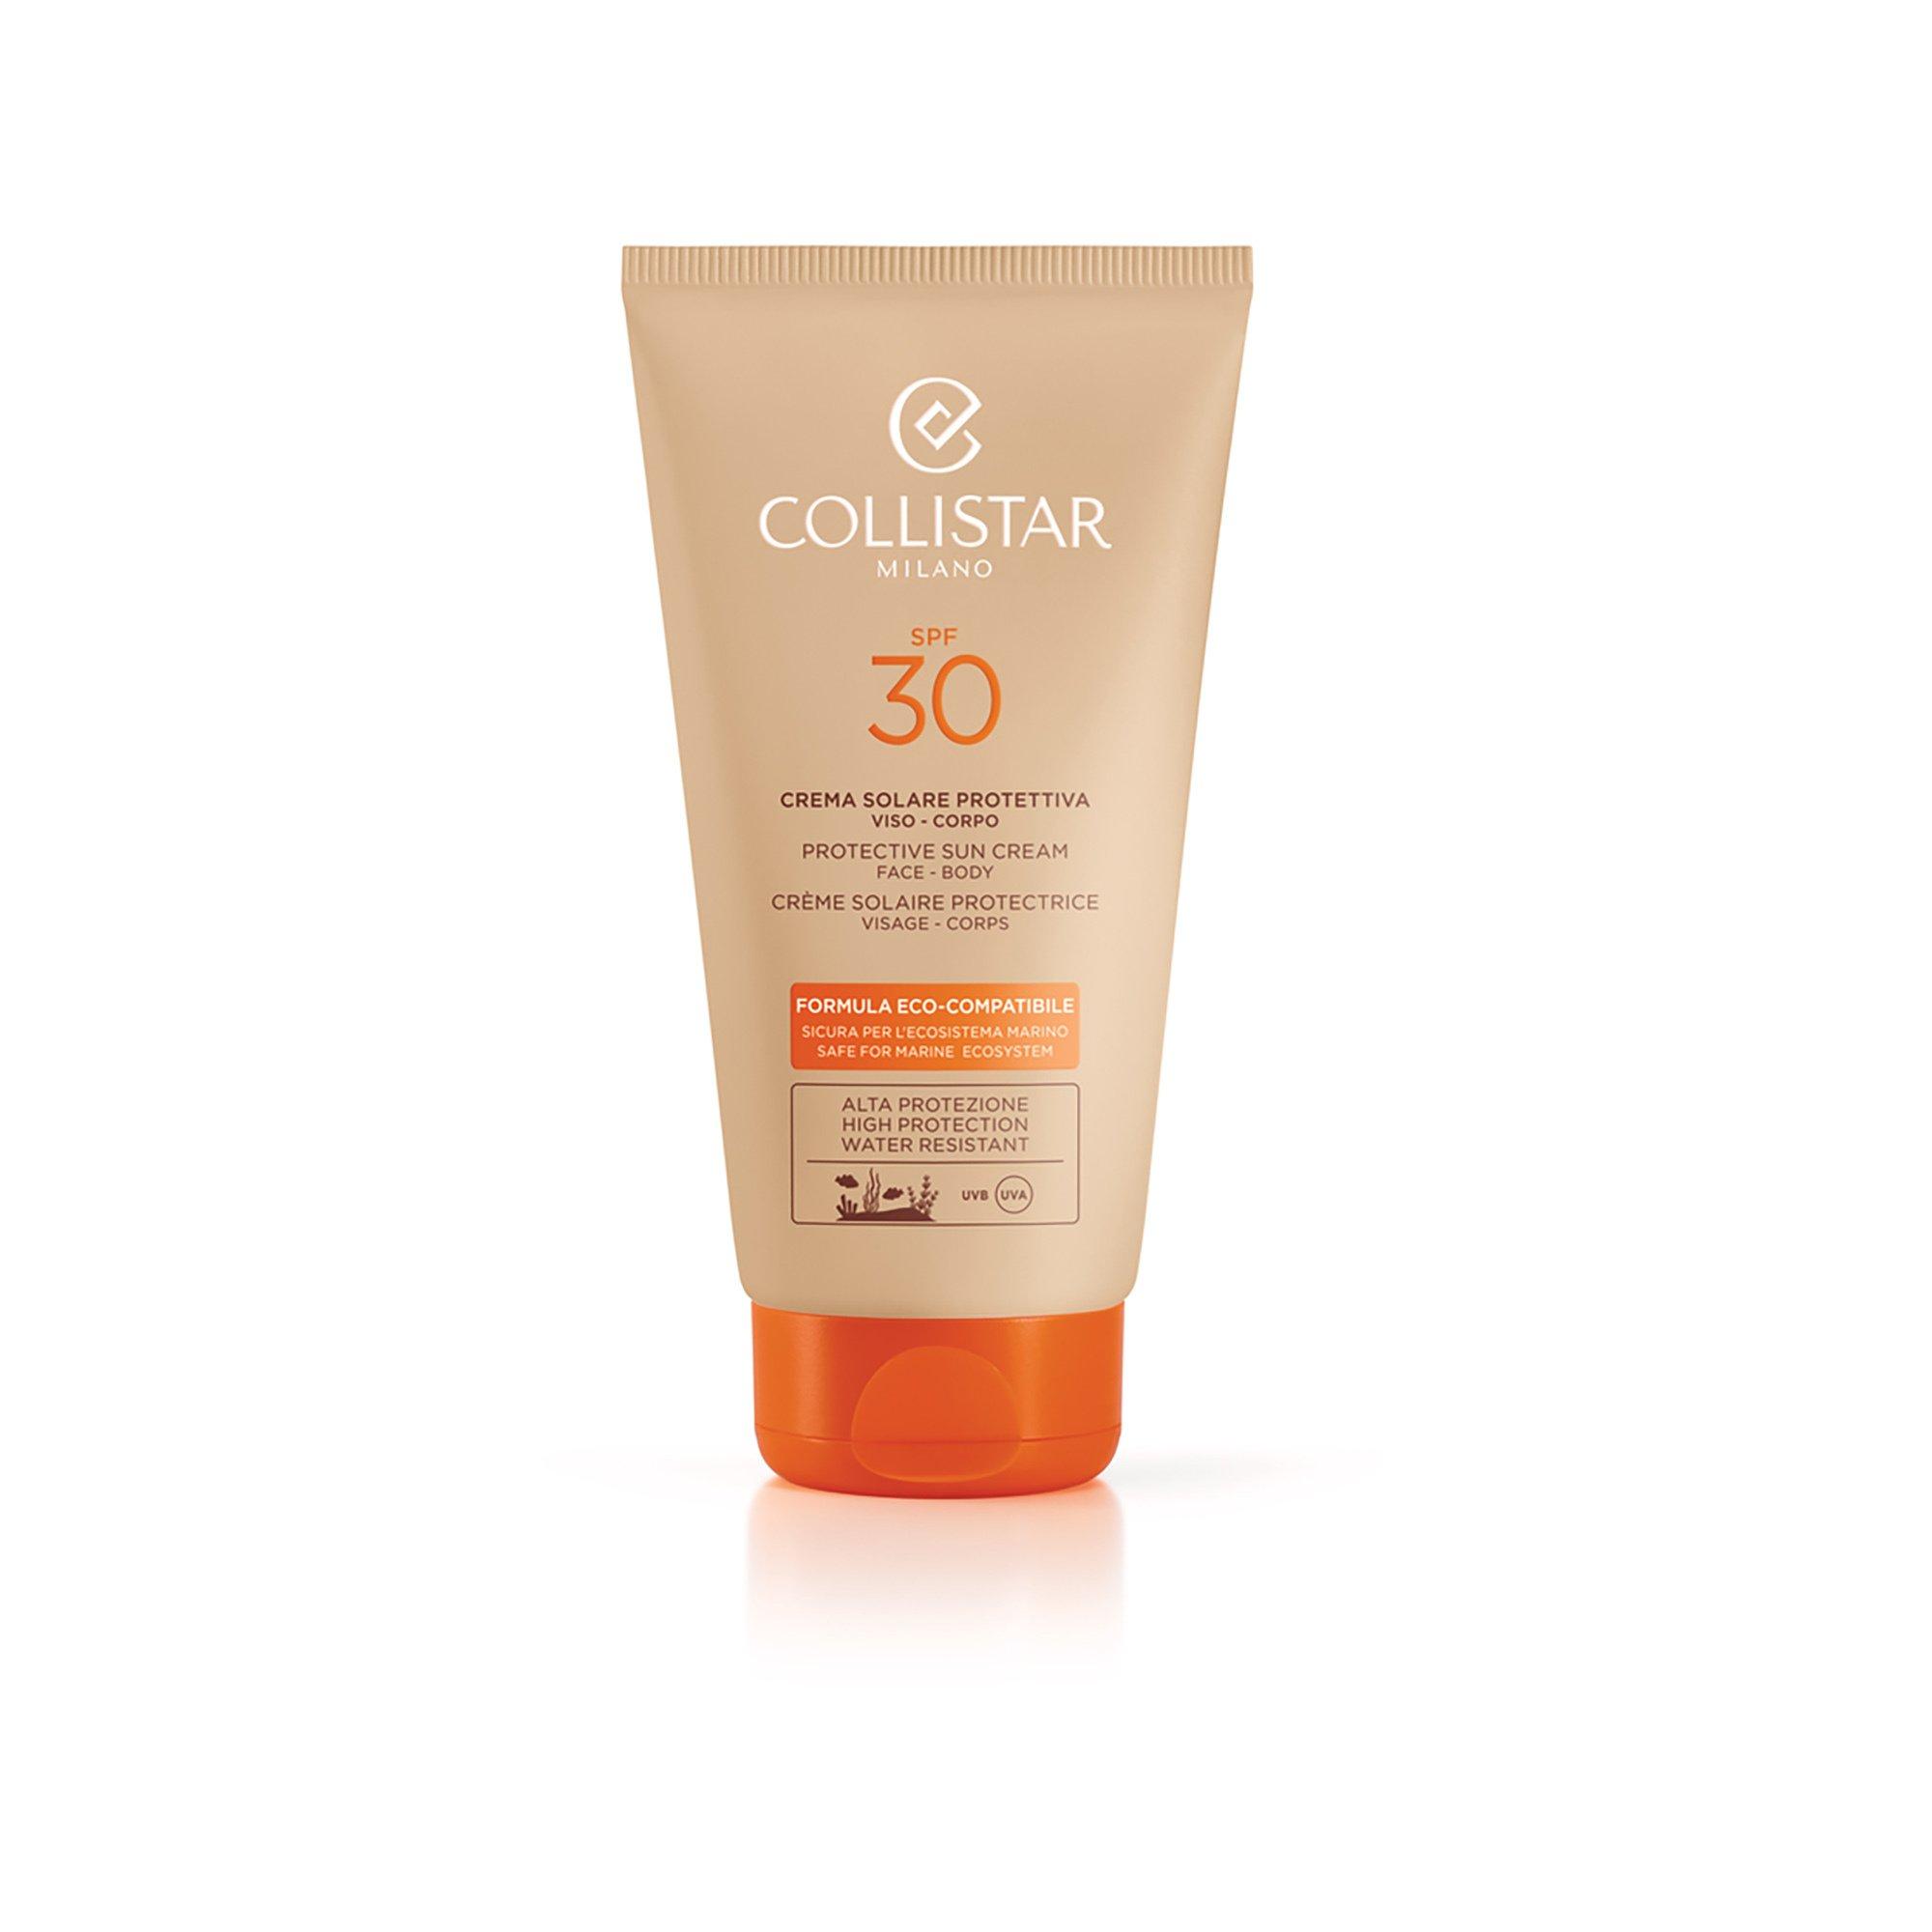 COLLISTAR  Eco-Compatible Protective Sun Cream Face Body SPF30 